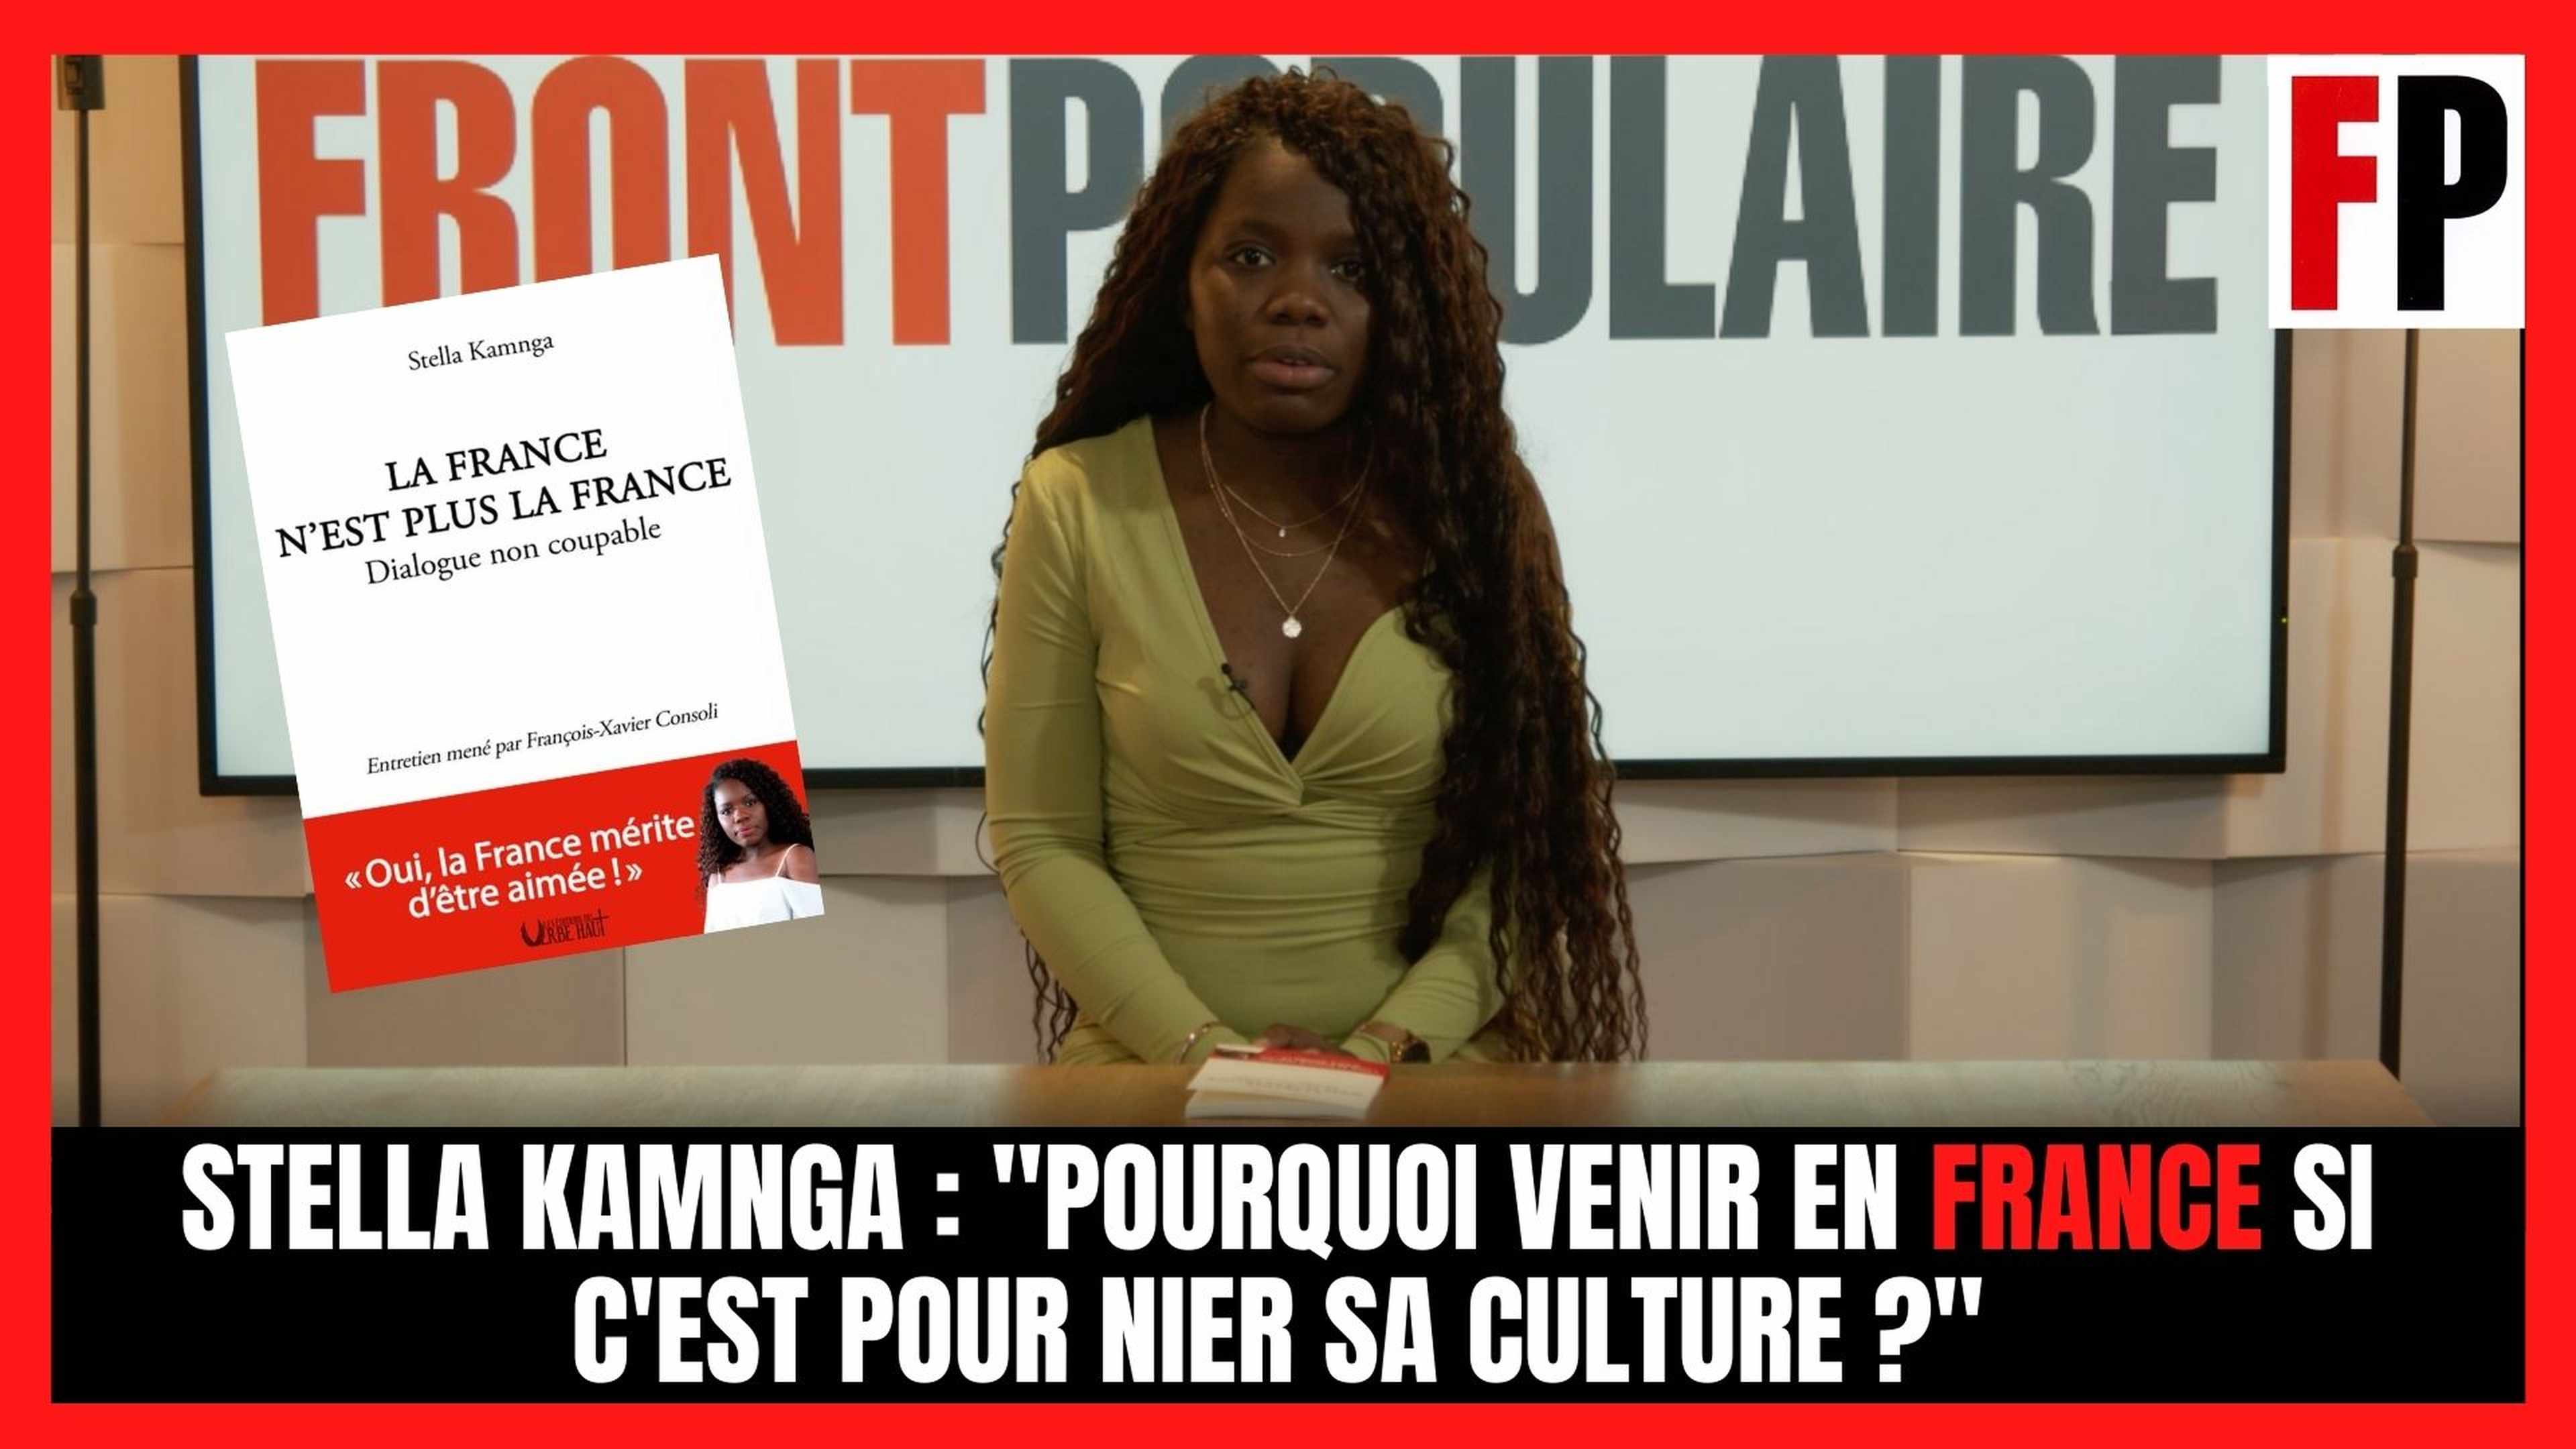 Stella Kamnga : "Pourquoi venir en France si c'est pour nier sa culture ?"